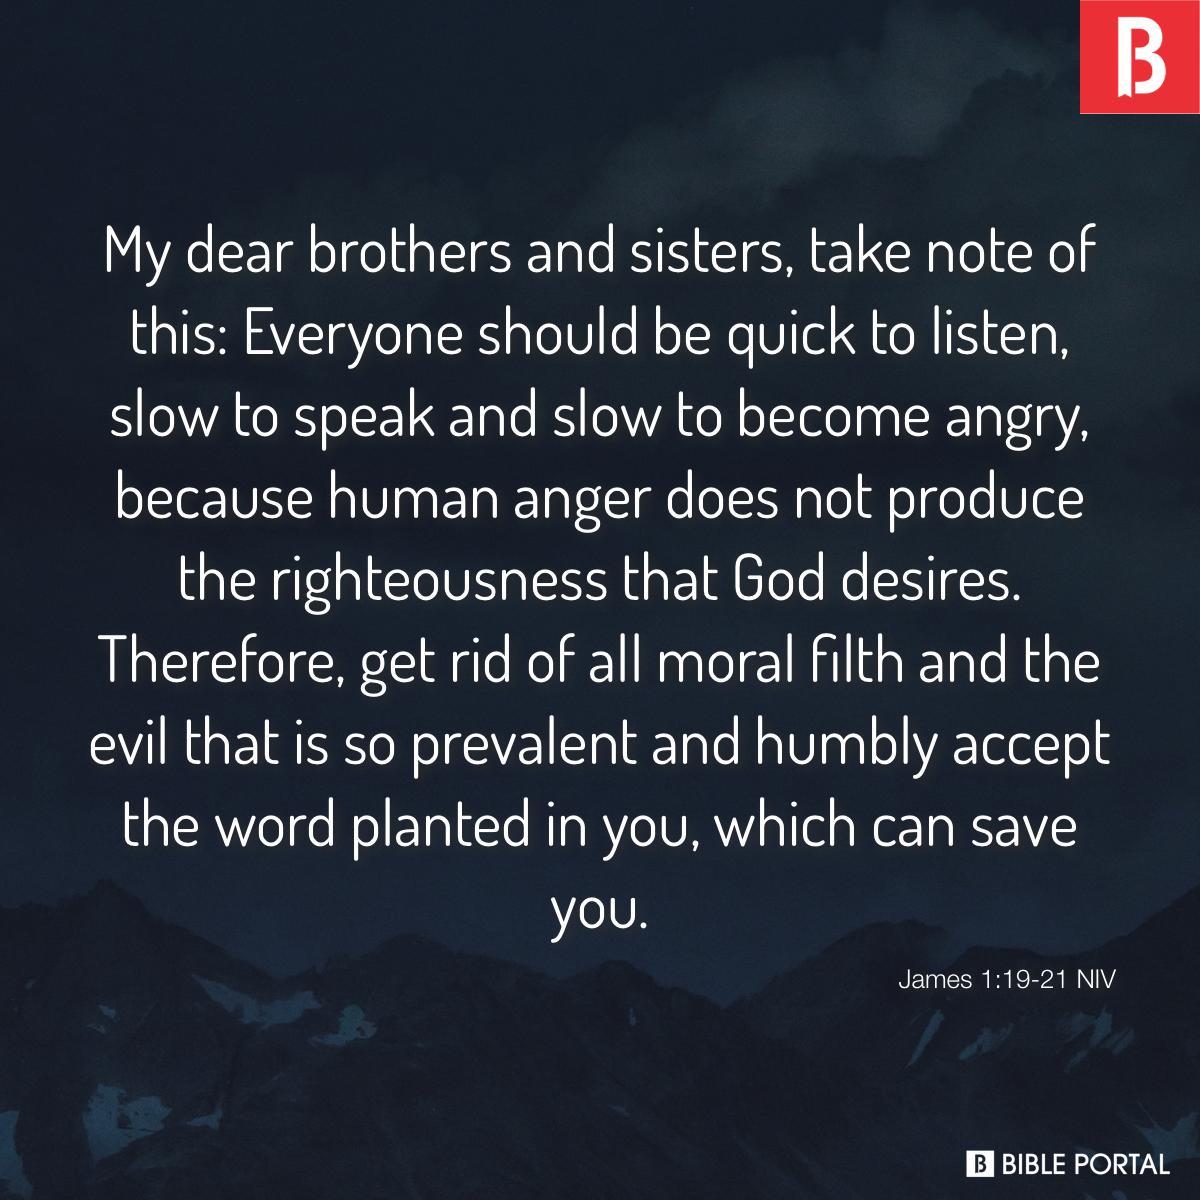 James 1:19-21 NIV